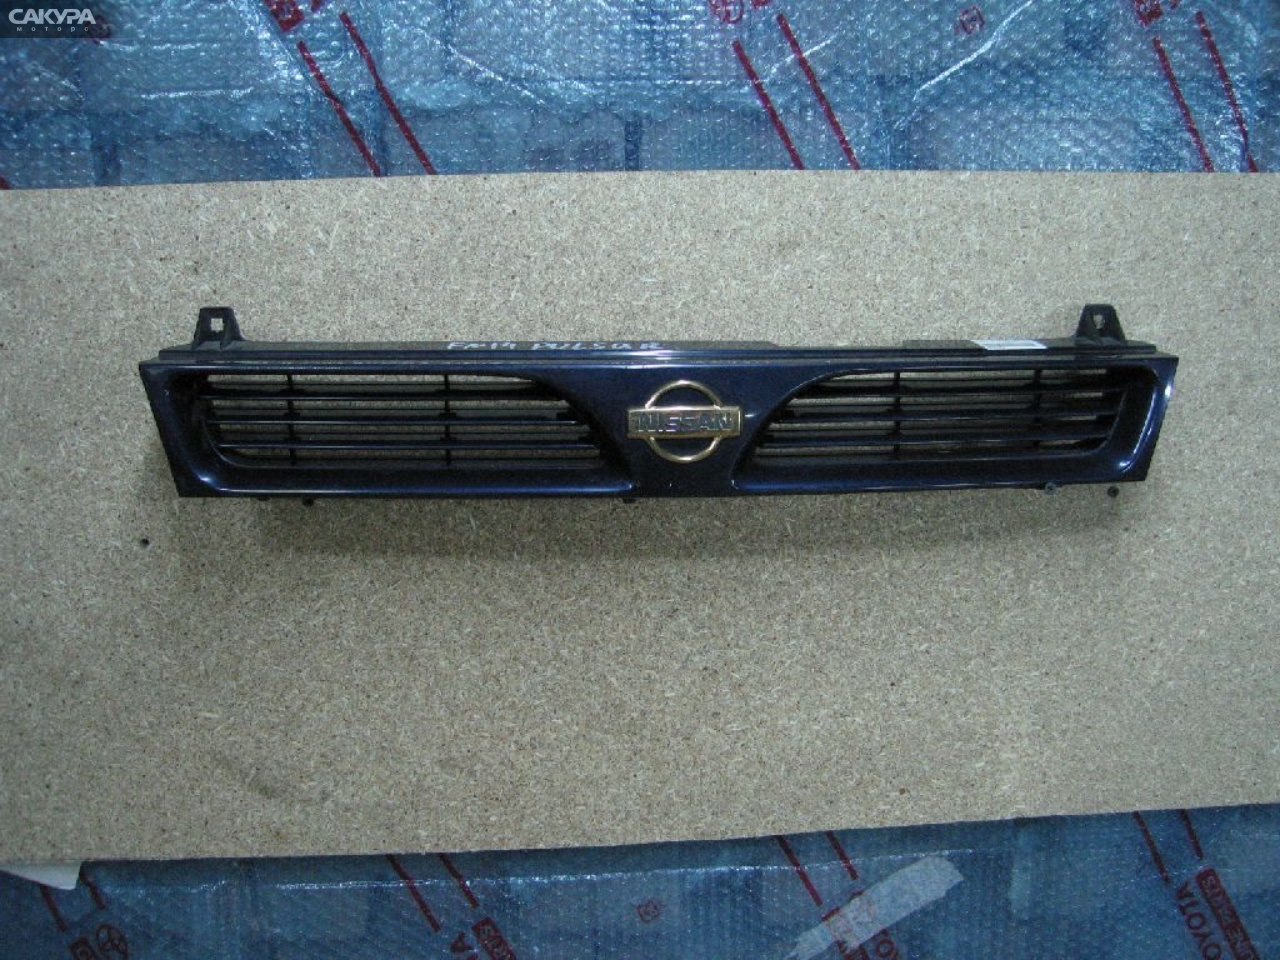 Решетка радиатора Nissan Pulsar FN14: купить в Сакура Абакан.